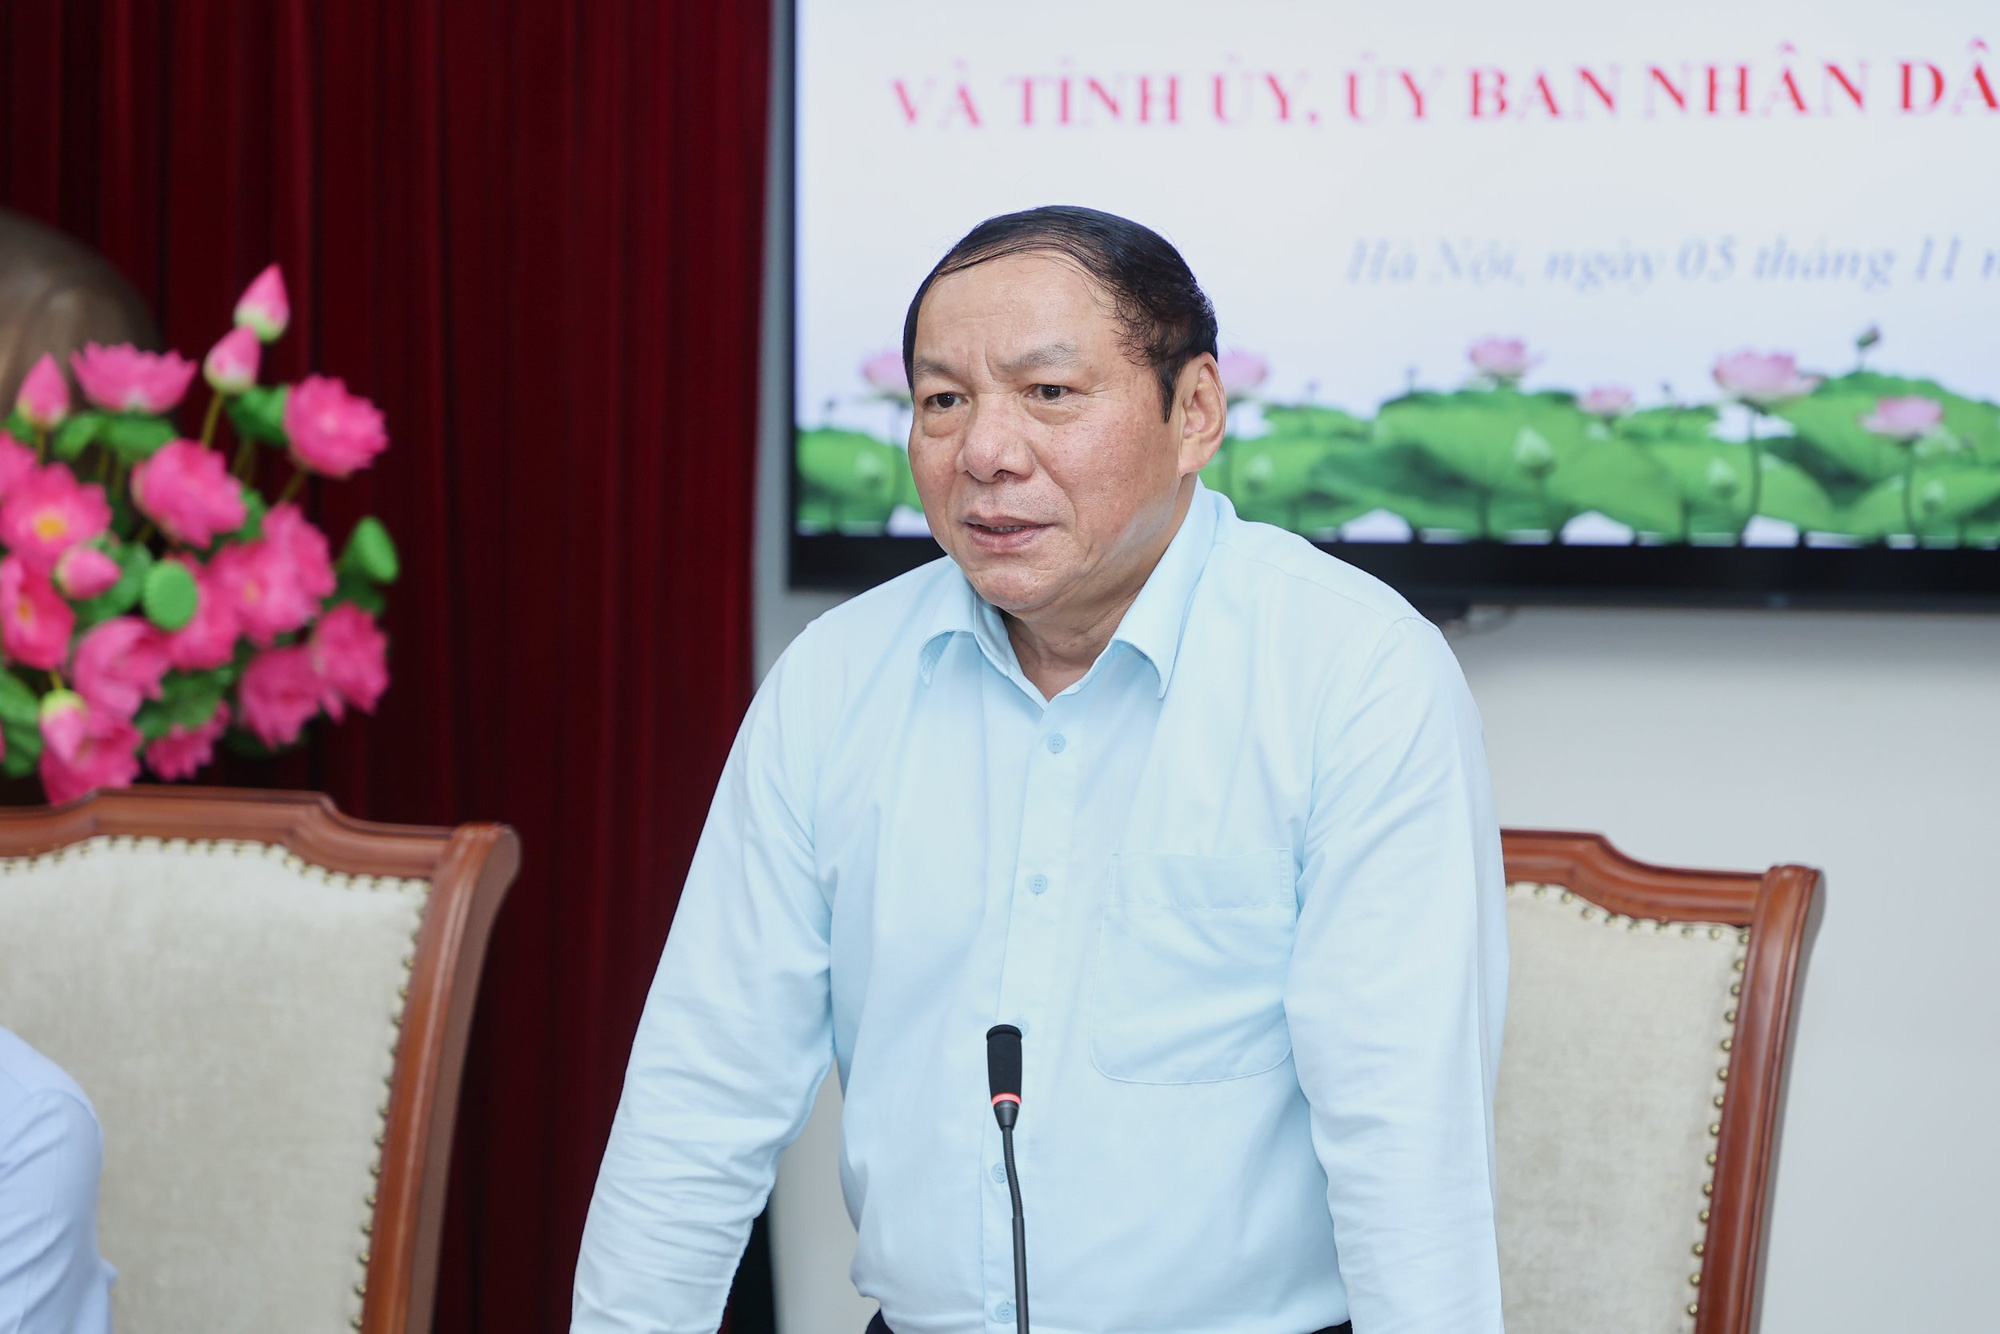 Bộ trưởng Nguyễn Văn Hùng: “Di tích lịch sử chính là báu vật vô giá của nhân dân Quảng Trị, phải giữ được thì mới phát triển lâu dài và bền vững” - Ảnh 5.